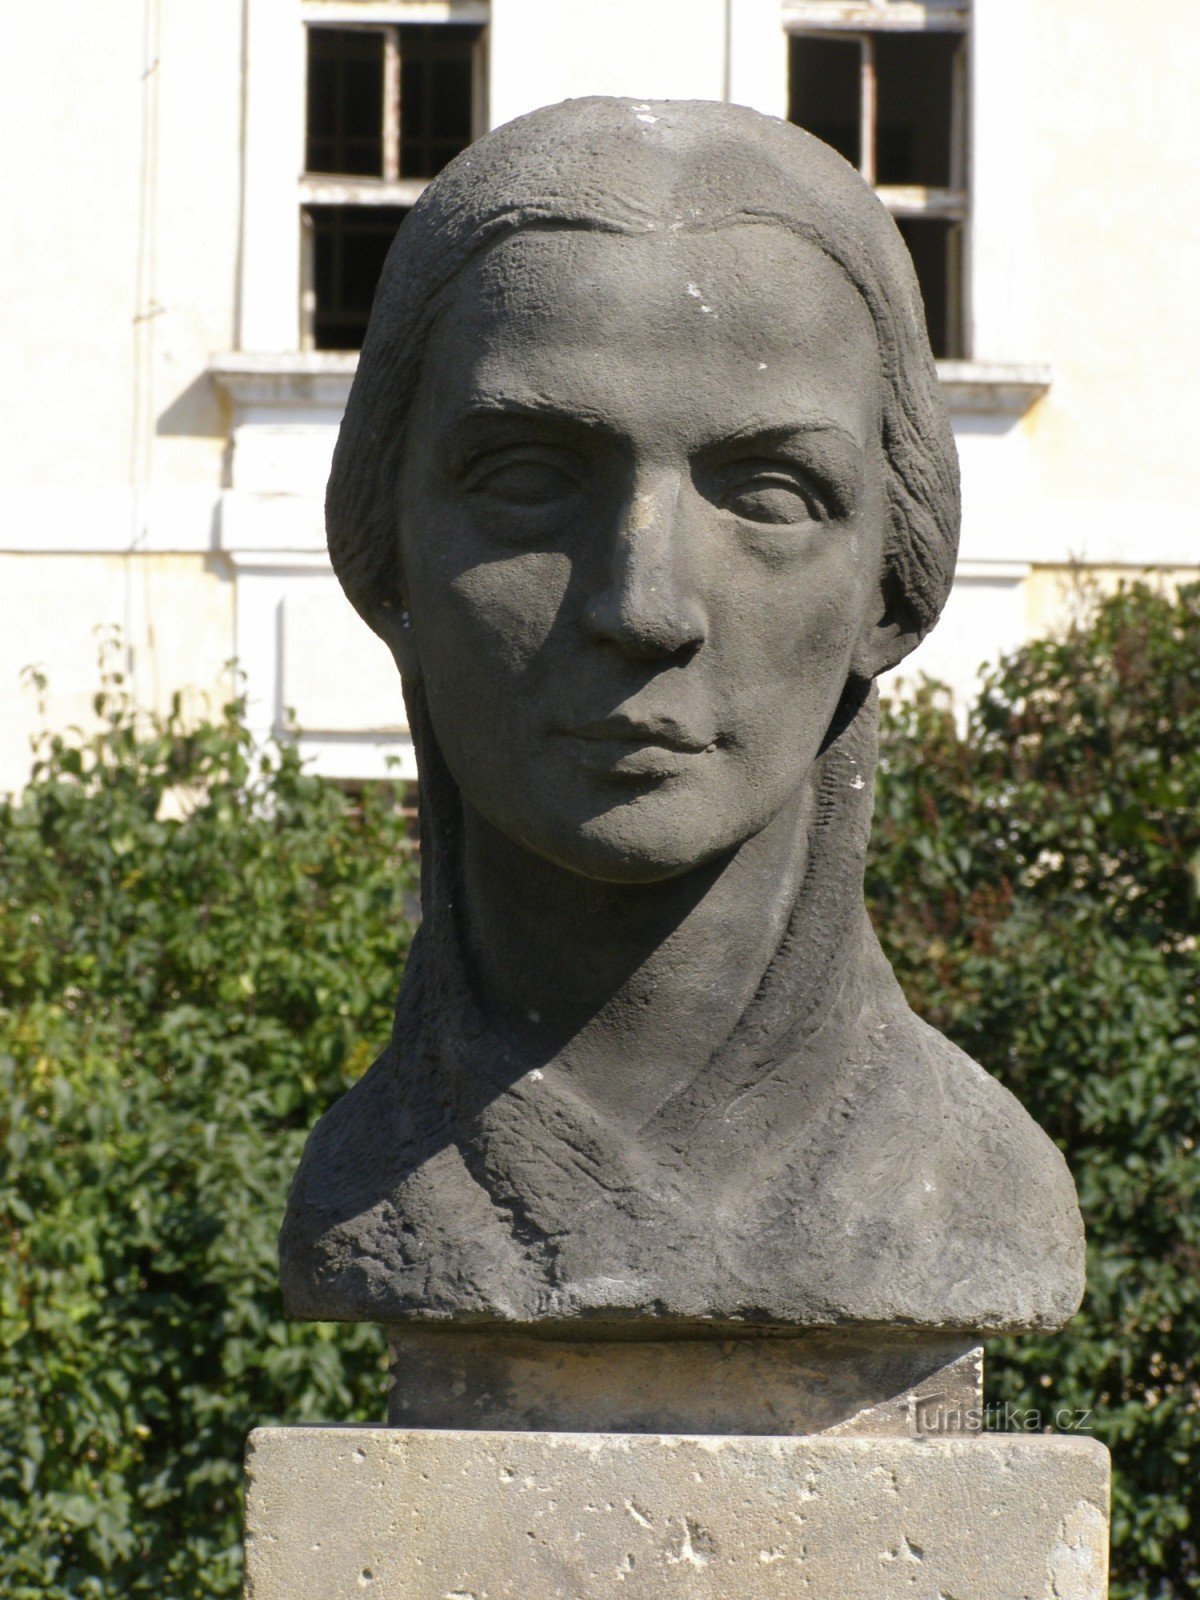 Josefov - μνημείο Bozena Němcová